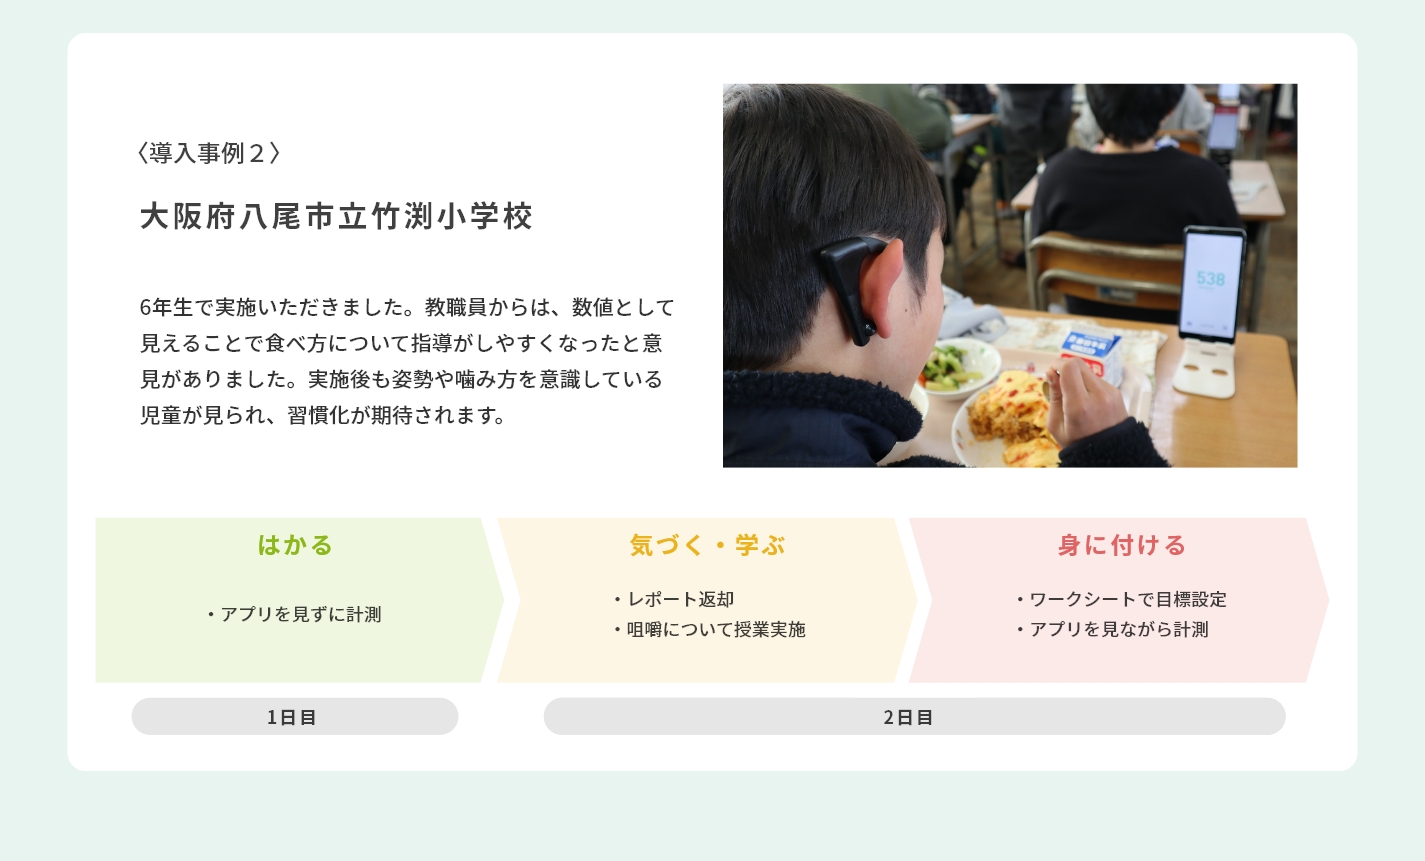 導入事例2大阪府八尾市立竹渕小学校食育授業の一環として実施